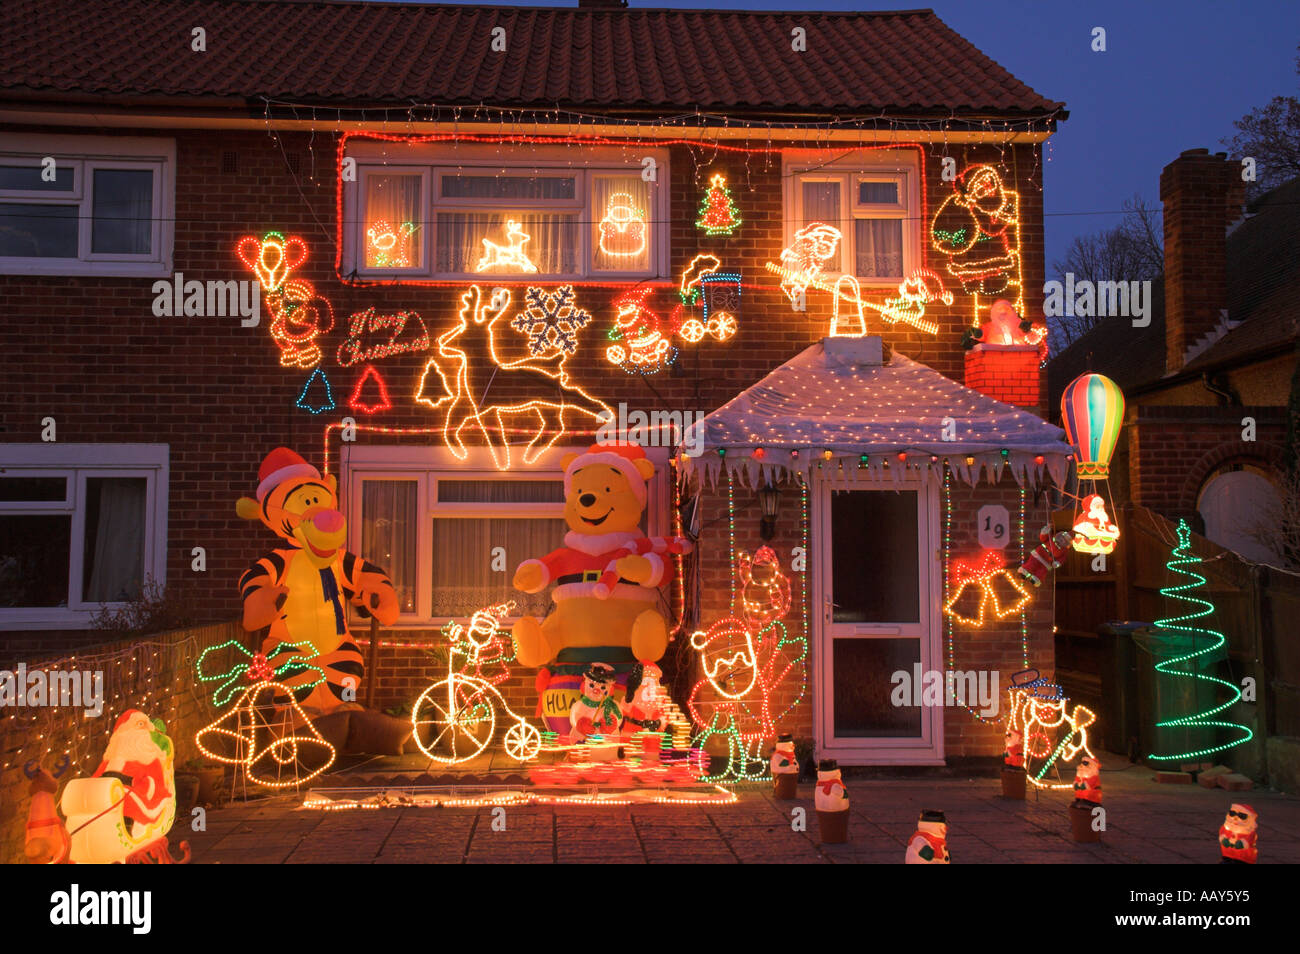 Haus mit Weihnachtsschmuck auf Haus Stockfotografie - Alamy